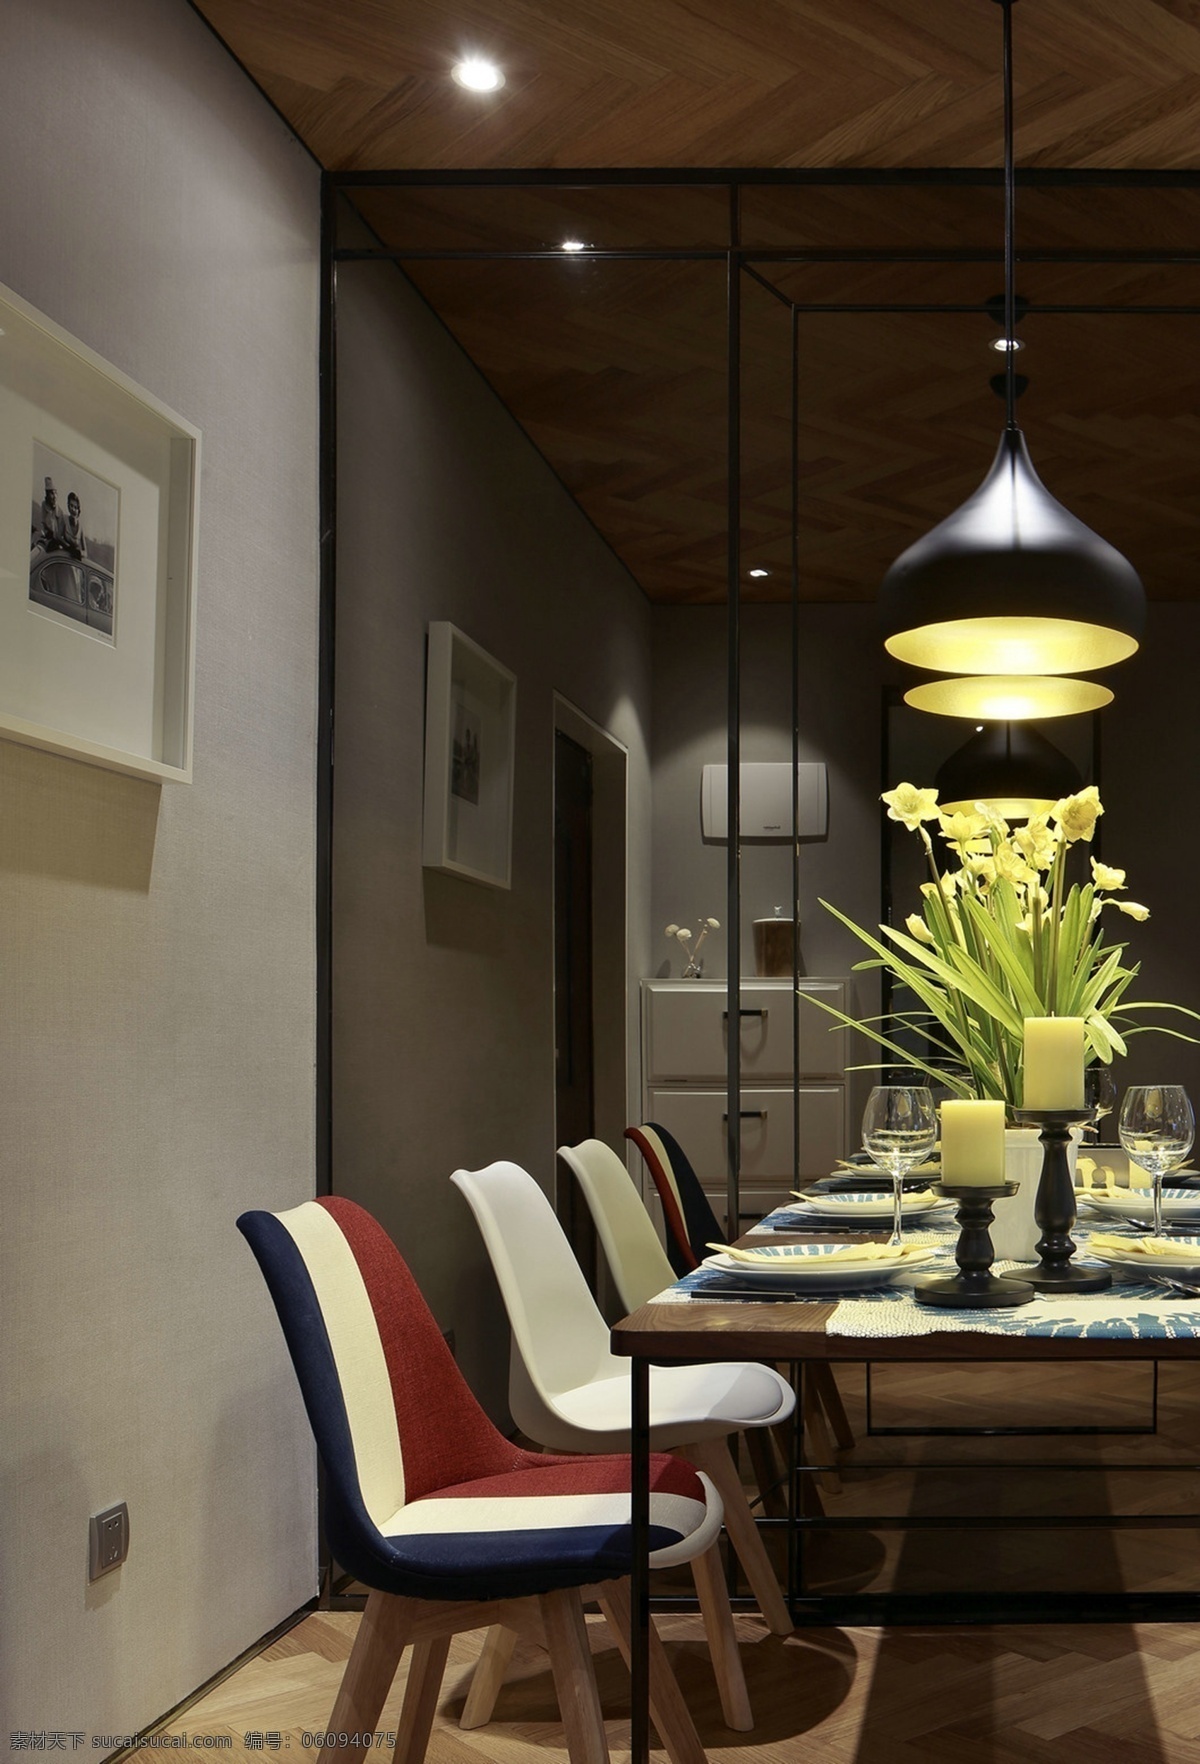 现代 时尚 客厅 拼 色 椅子 室内装修 效果图 纯色背景墙 黑色吊灯 客厅装修 木制餐桌